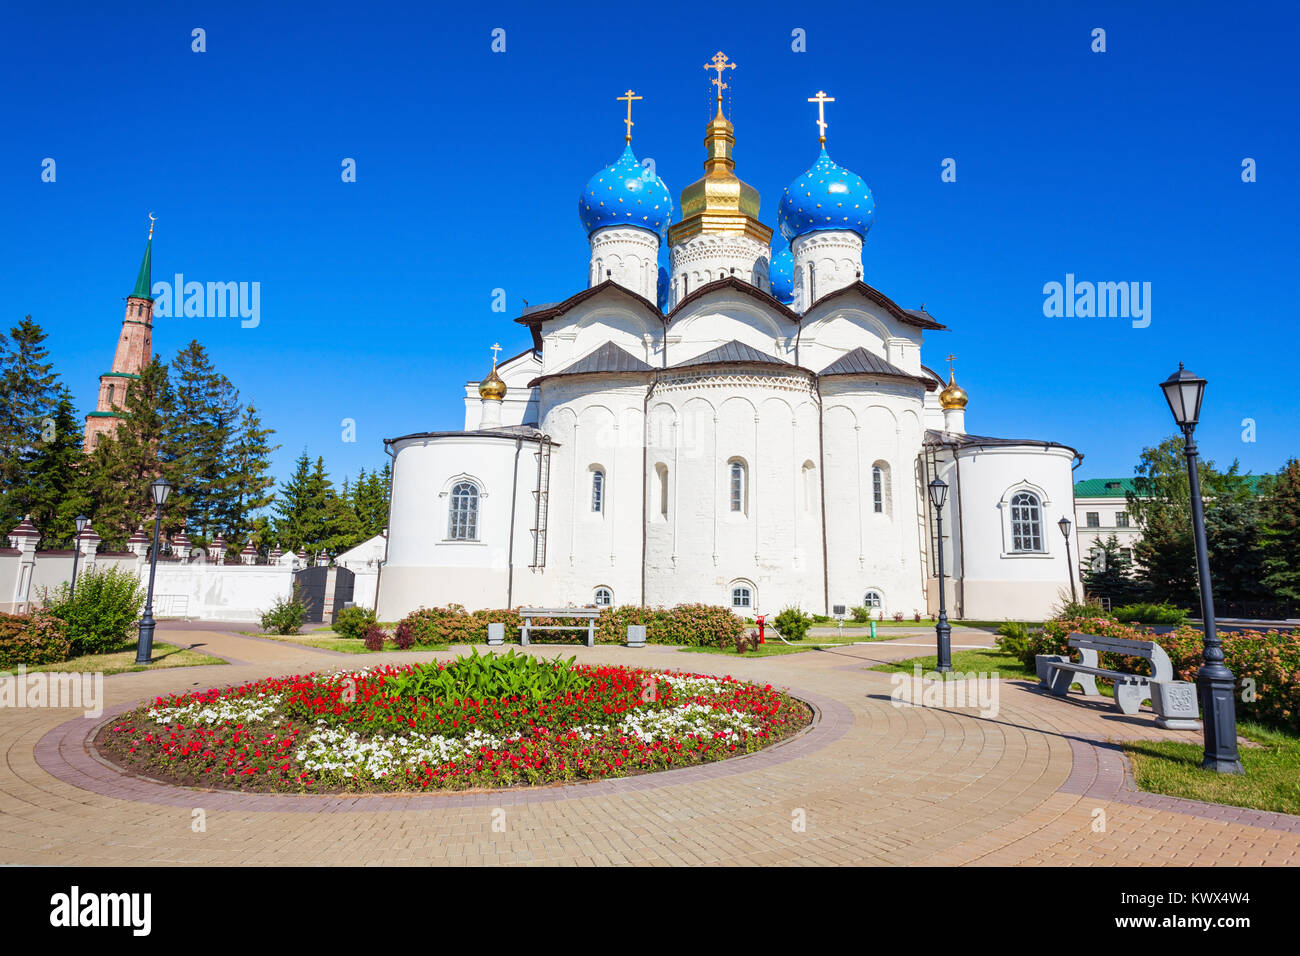 La Cathédrale de l'annonciation du Kremlin de Kazan est la première église orthodoxe du Kremlin de Kazan. Le Kremlin de Kazan est le chef de la citadelle historique Tatarsta Banque D'Images